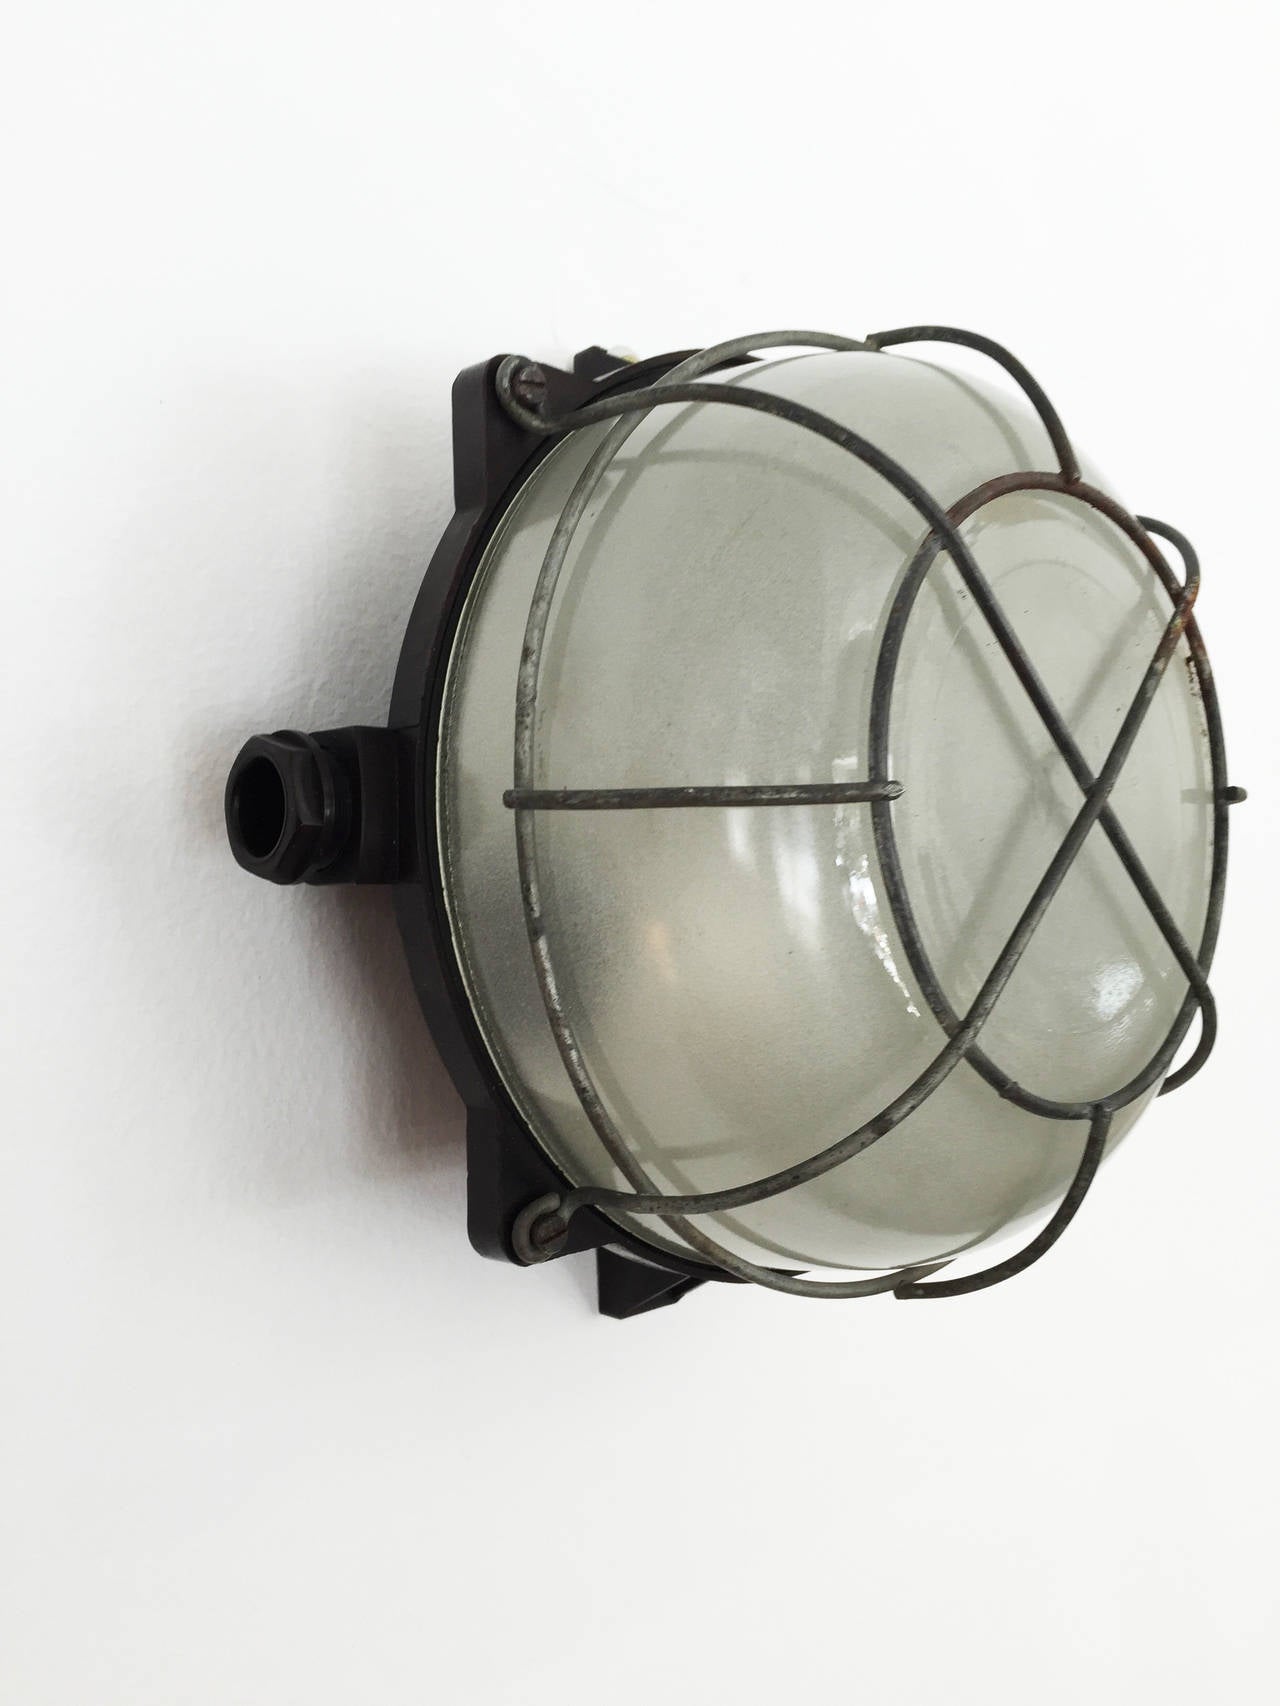 Lampe en bakélite pour plafond ou mur d'usine de la fin des années 1940
jusqu'à 14 pièces disponibles